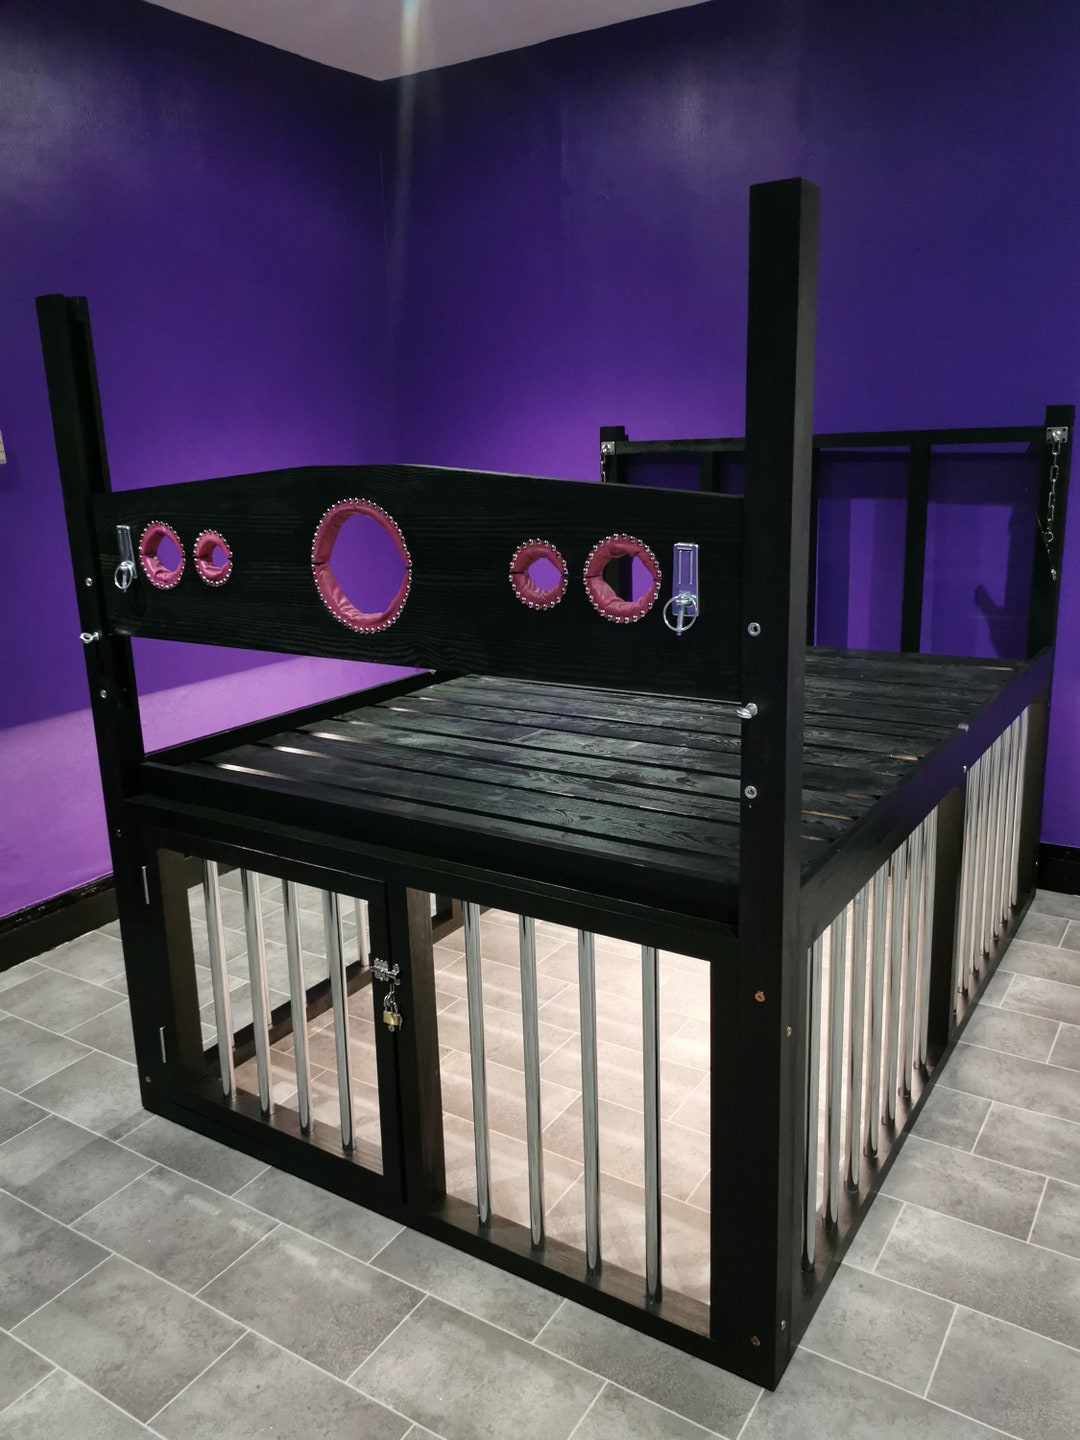 Bondage Bed With Cage and Light Bedroom Fetish Bed Fetish Toys Bondage  Furniture BDSM Room for Bdsm Bdsm Furniture Spanking Bed SEX Bed - Etsy